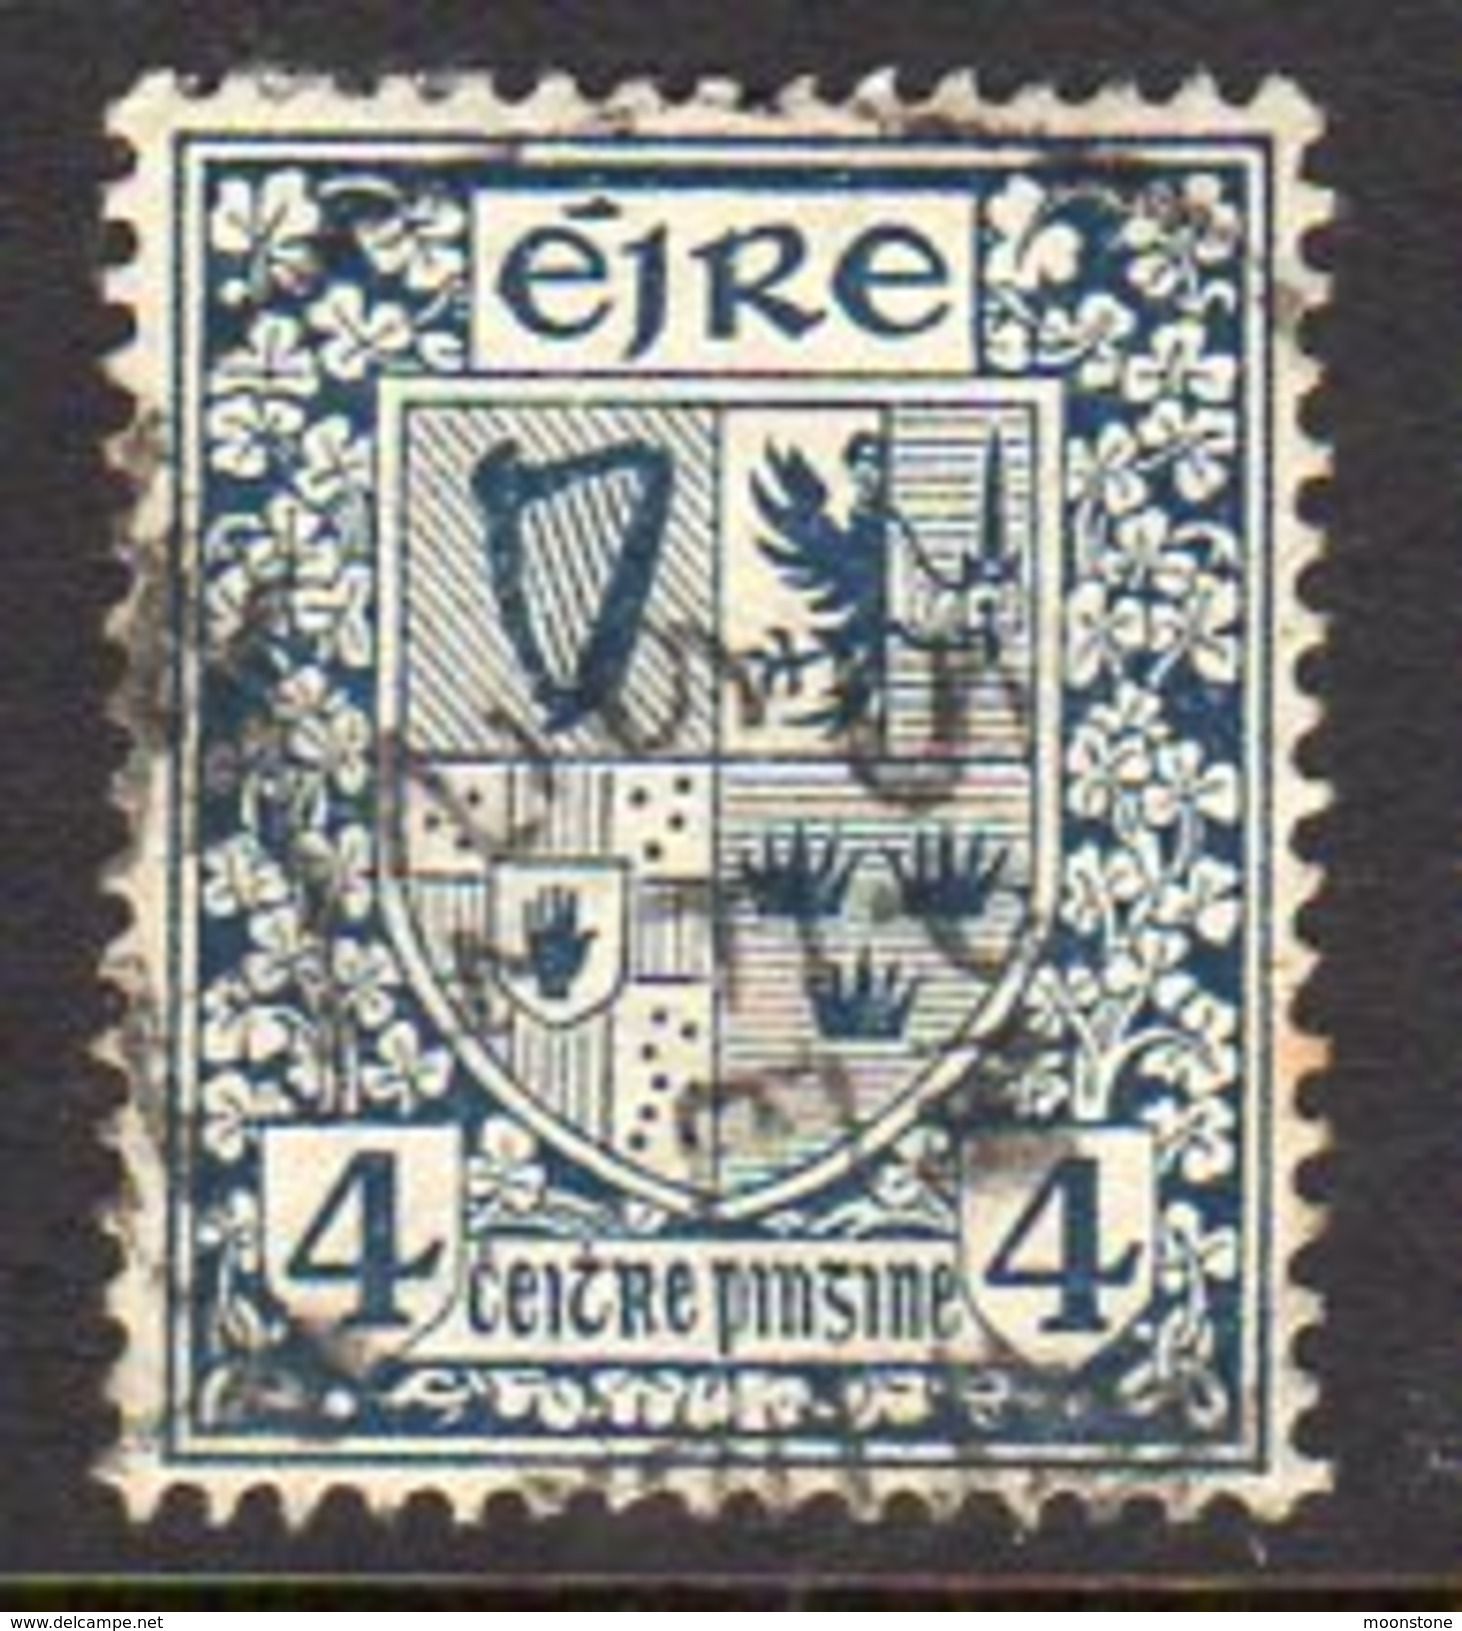 Ireland 1922-34 4d Definitive, Wmk. SE, Used, SG 77 - Ungebraucht